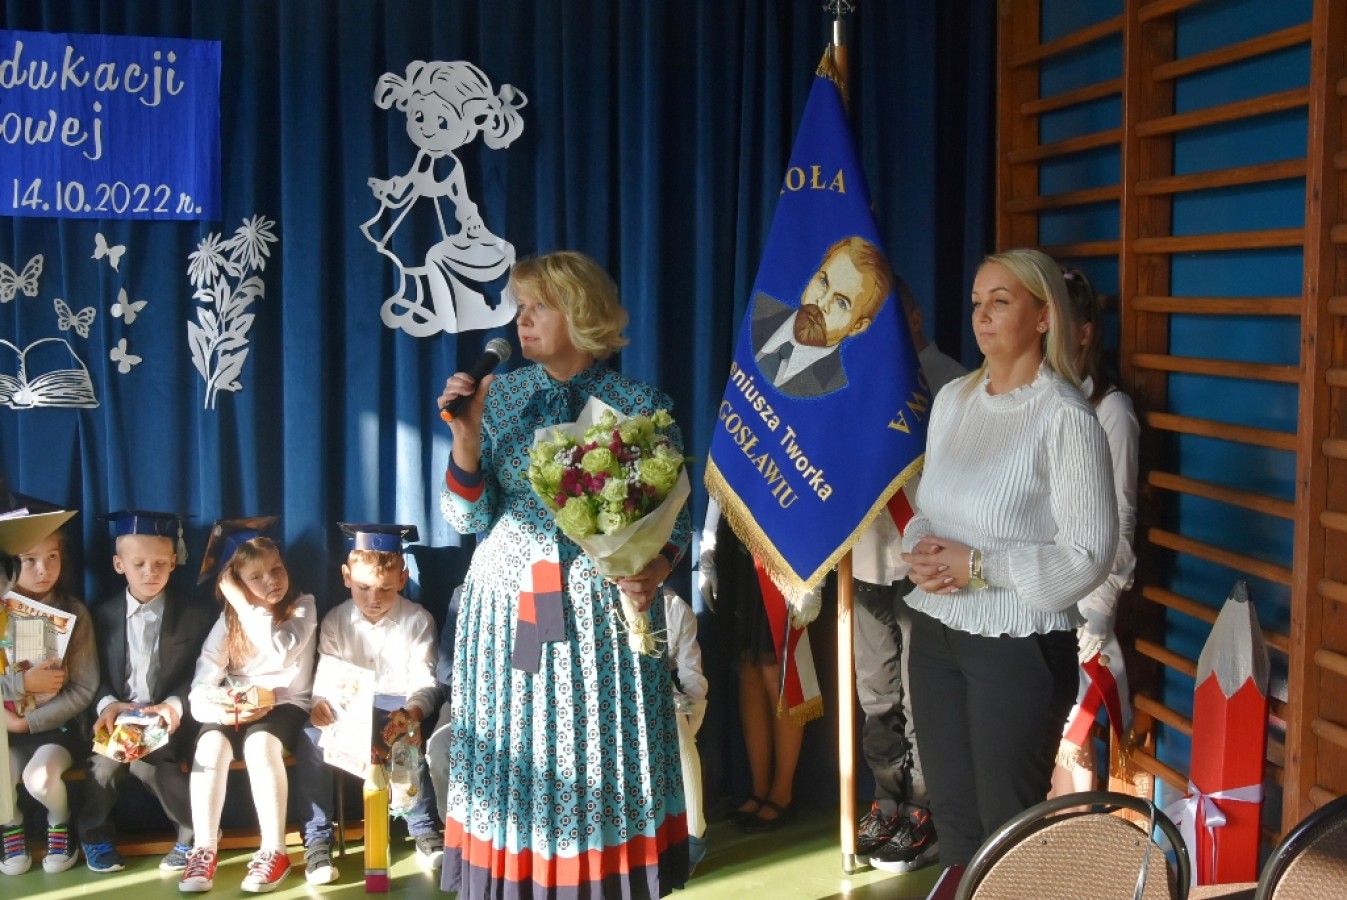 Obchody Dnia Edukacji Narodowej w Dargosławiu